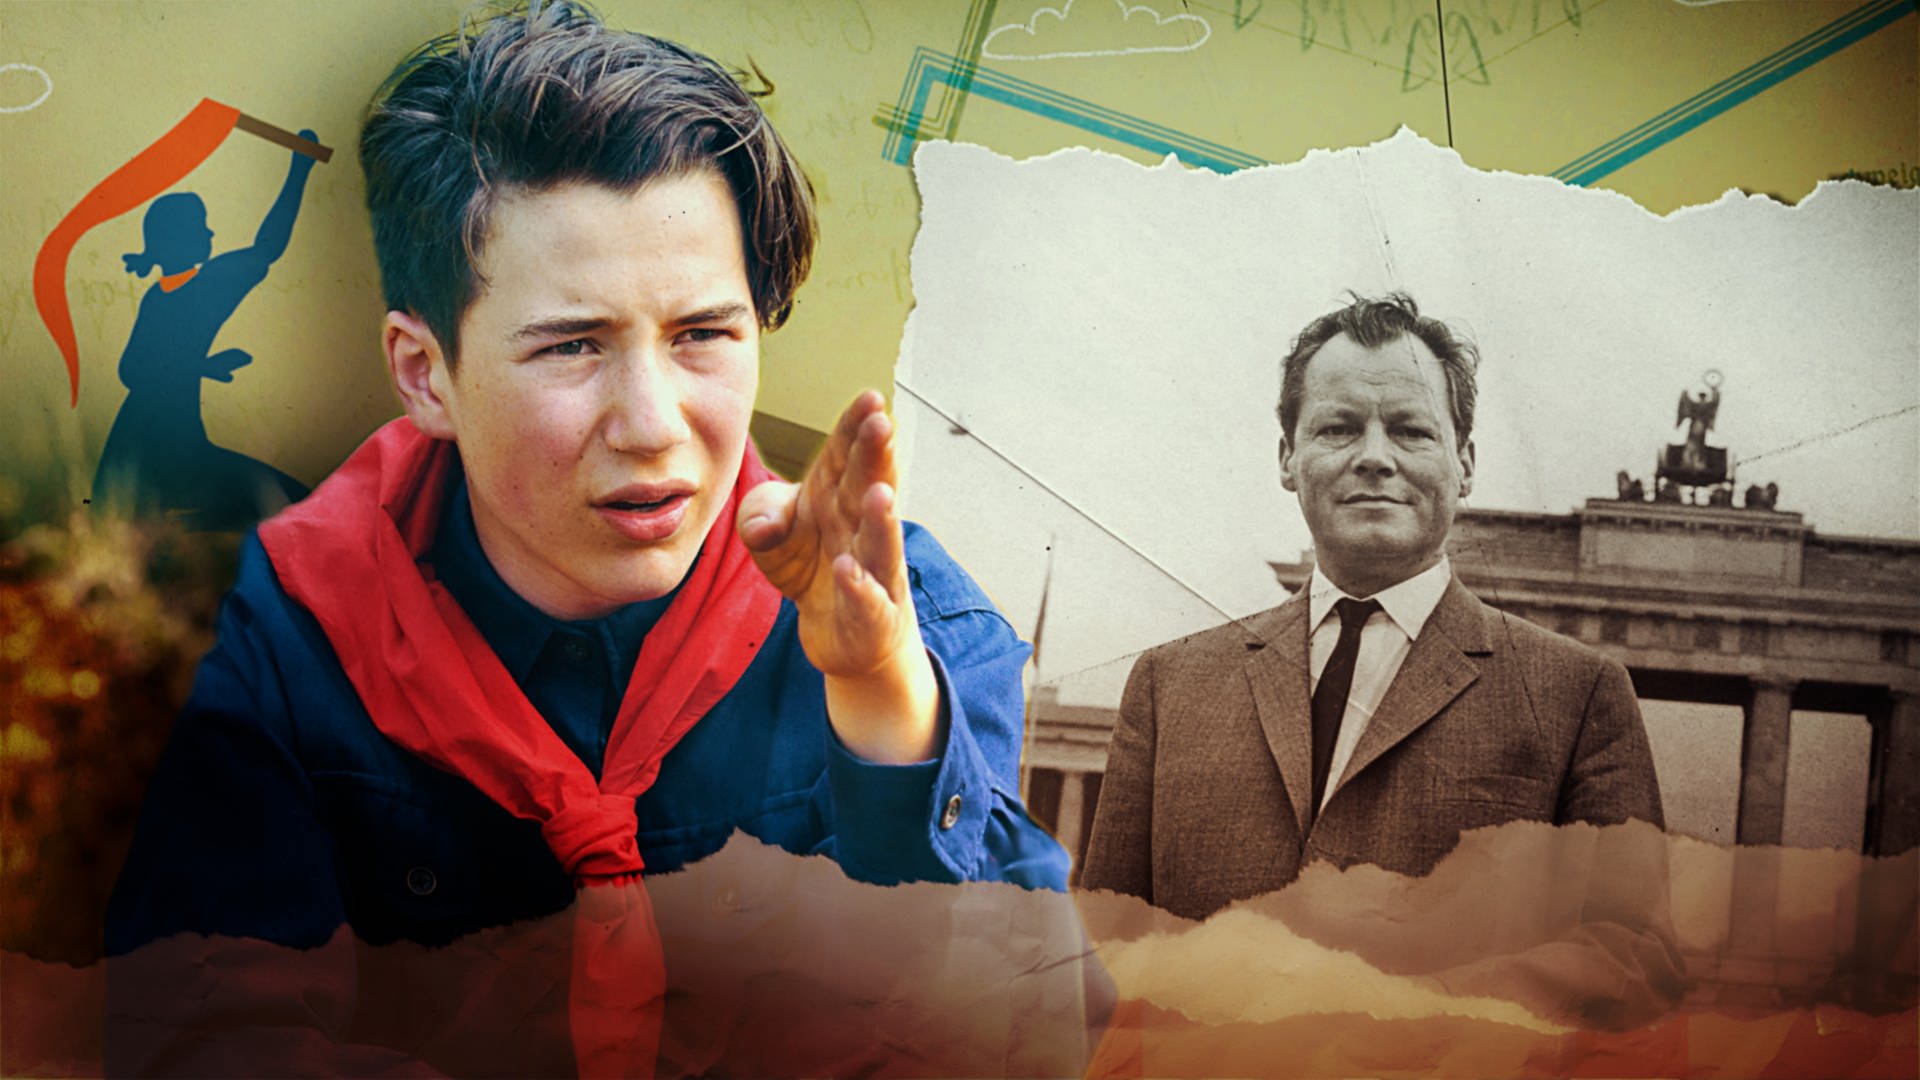 Bildmontage von Willy Brandt und der Filmfigur.